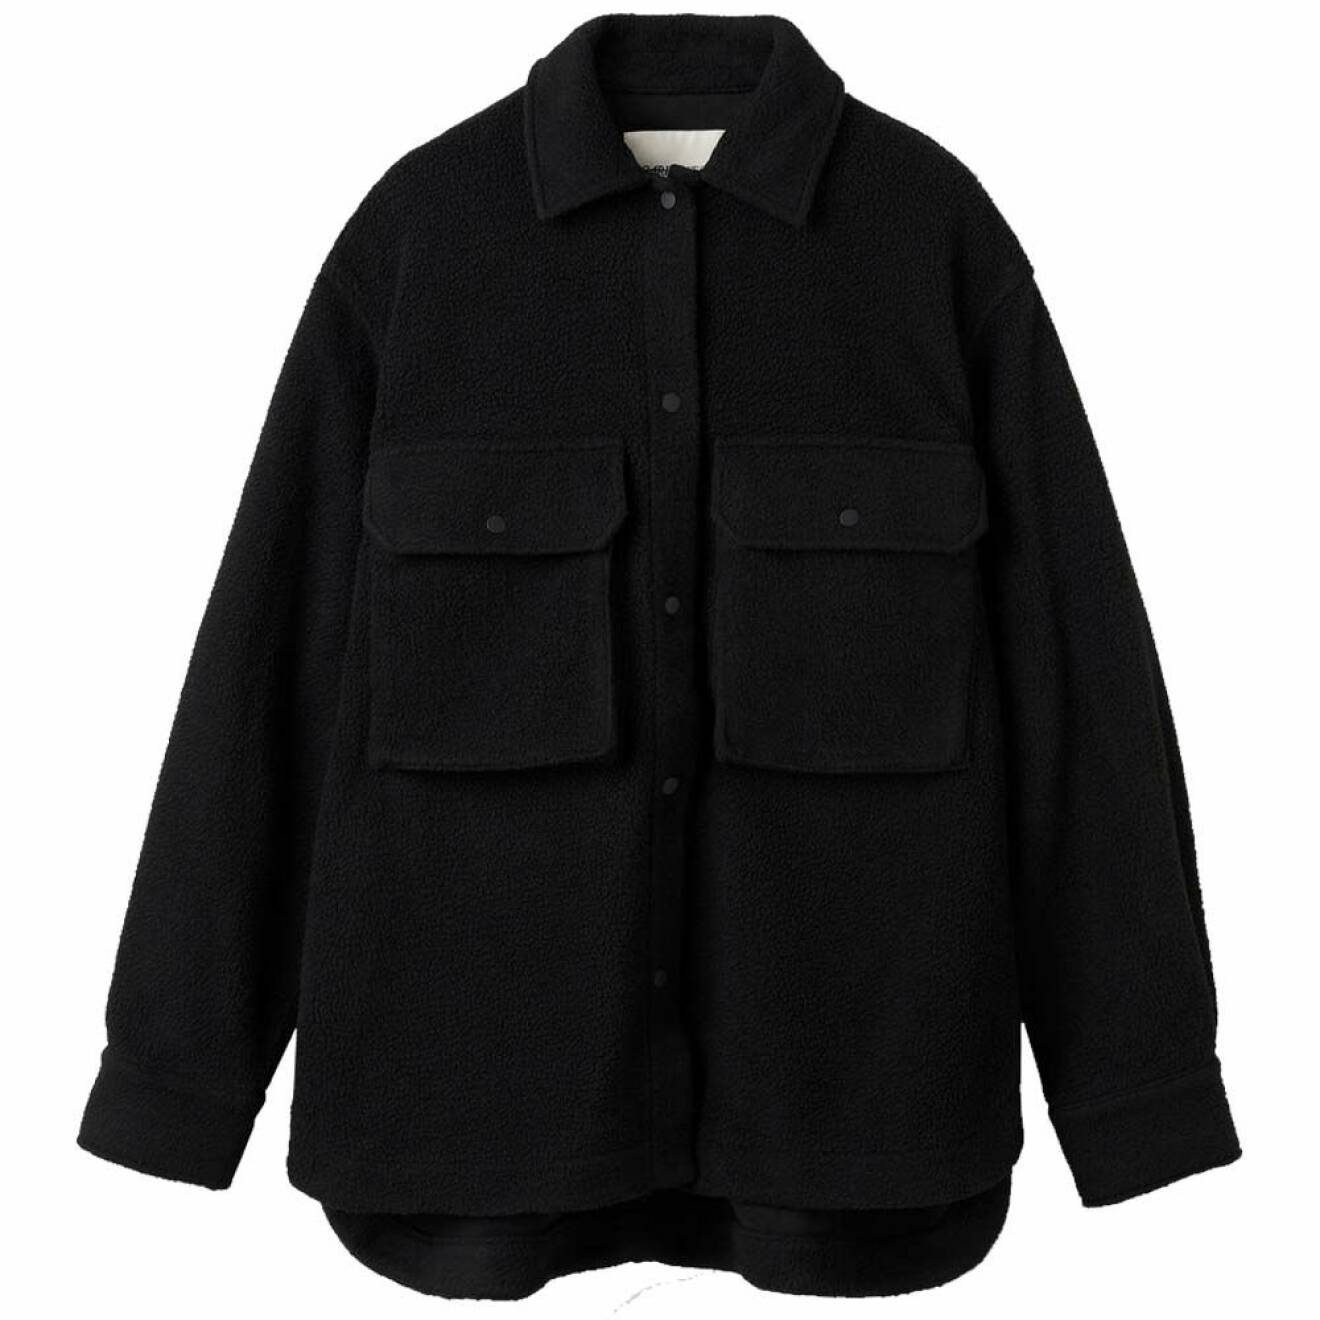 svart skjortjacka i fleece